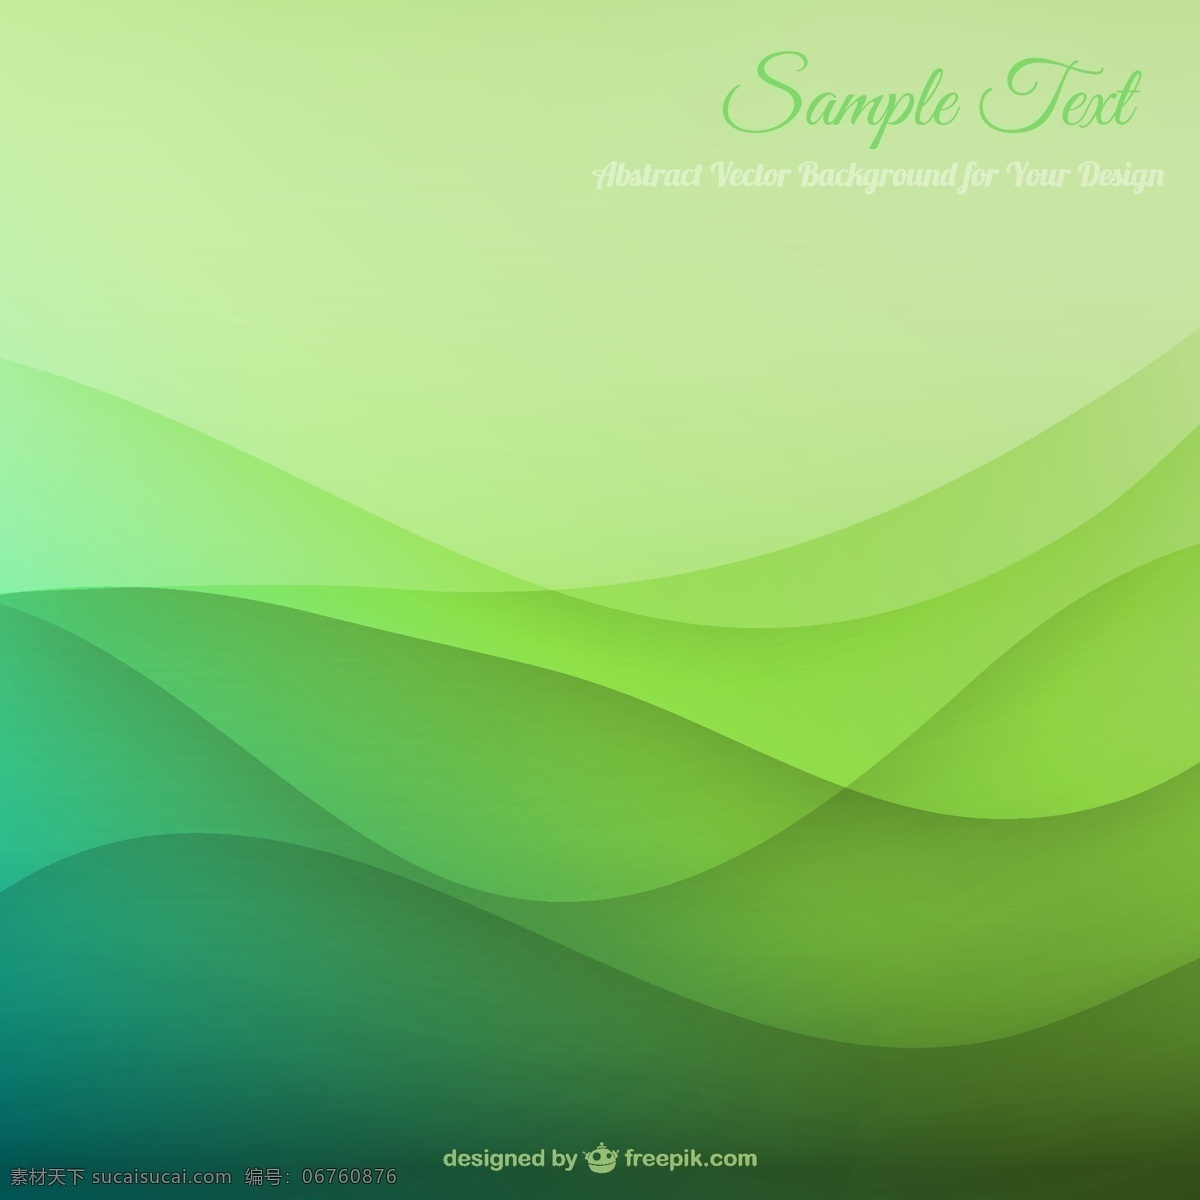 绿色波浪背景 背景 抽象 自然 绿色 模板 波浪 弹簧 艺术 绿色背景 壁纸 图形 空间 布局 生态 平面设计